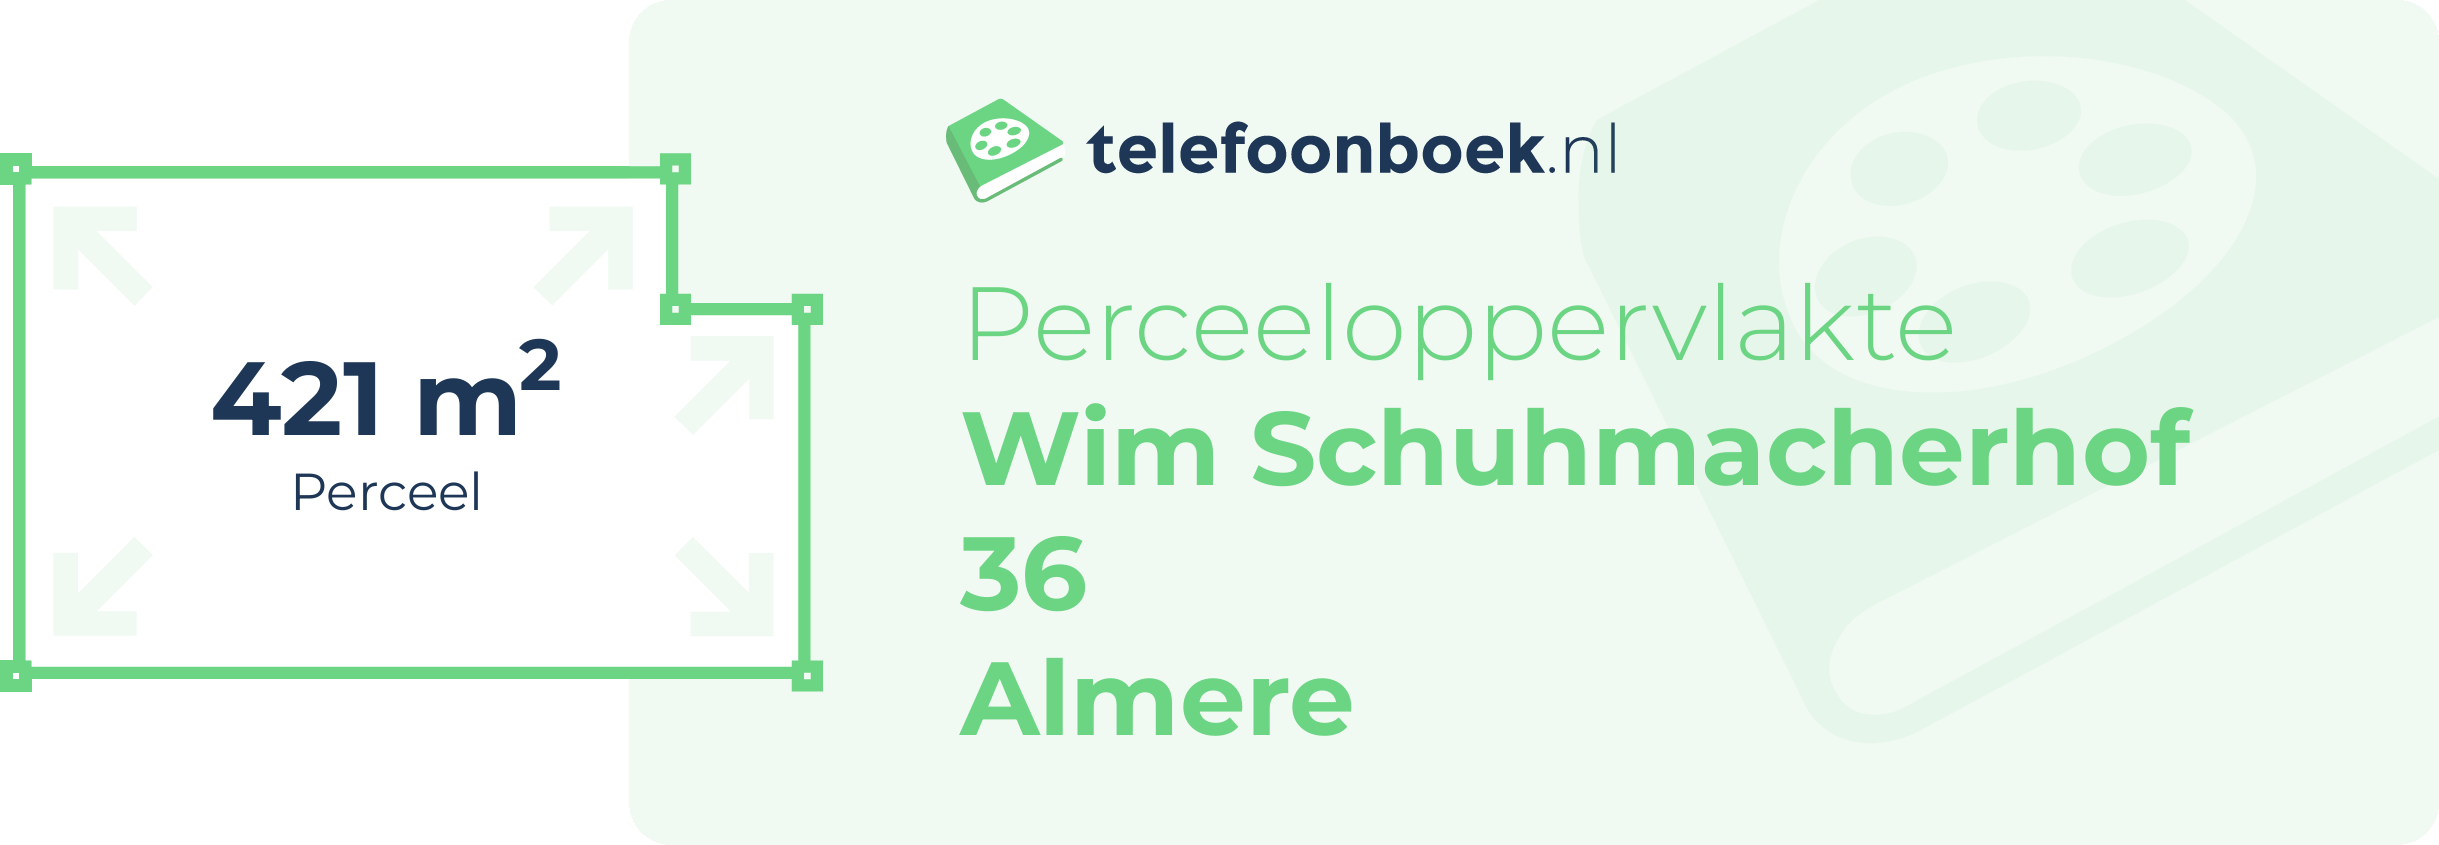 Perceeloppervlakte Wim Schuhmacherhof 36 Almere